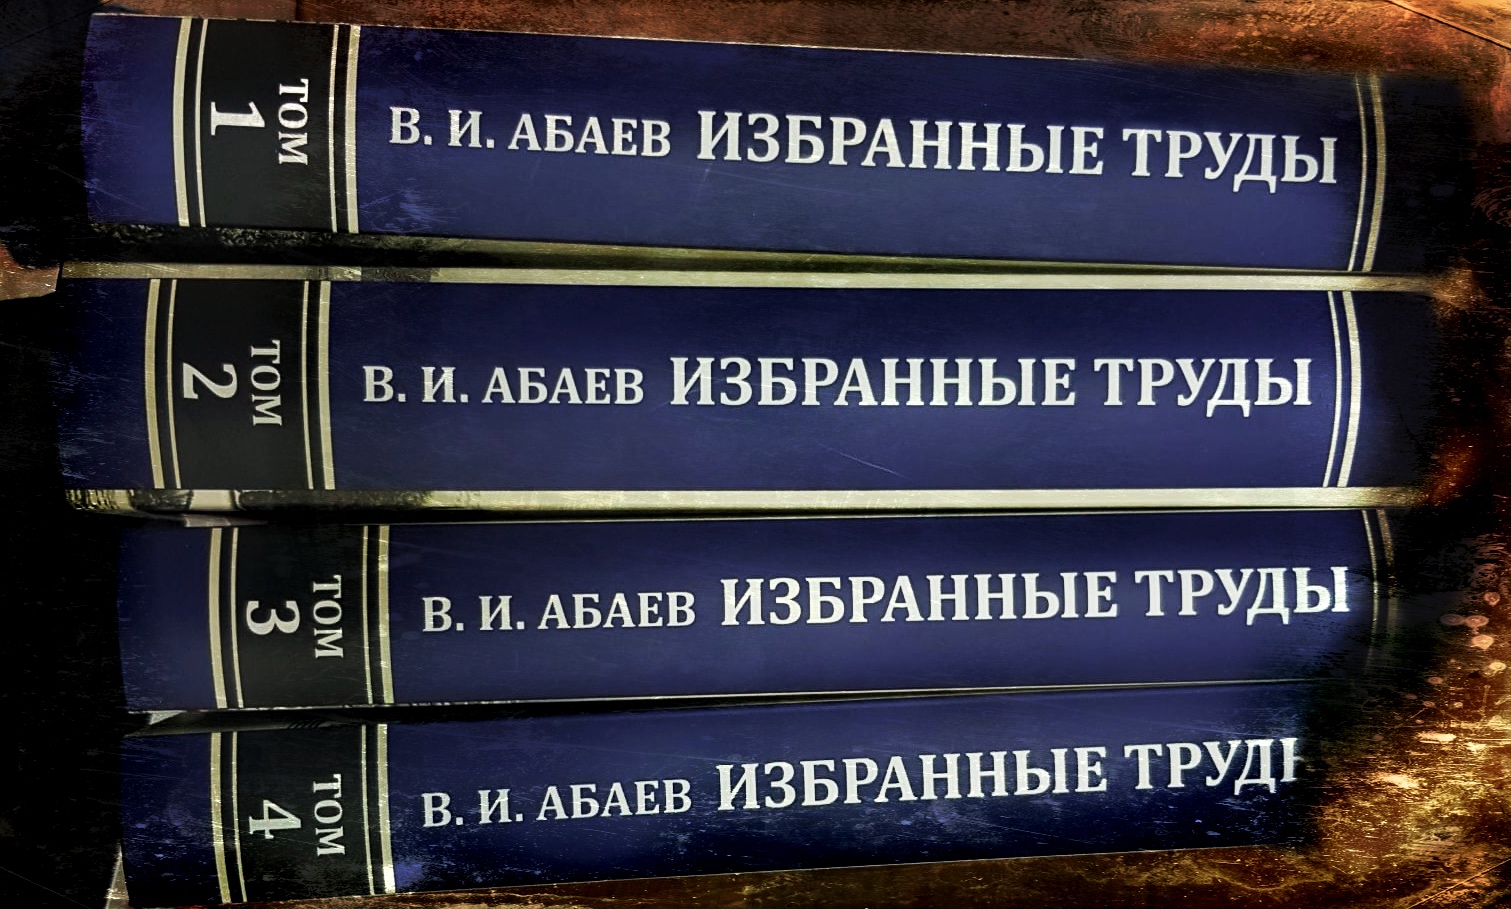 В Москве состоится презентация уникальных изданий Васо Абаева